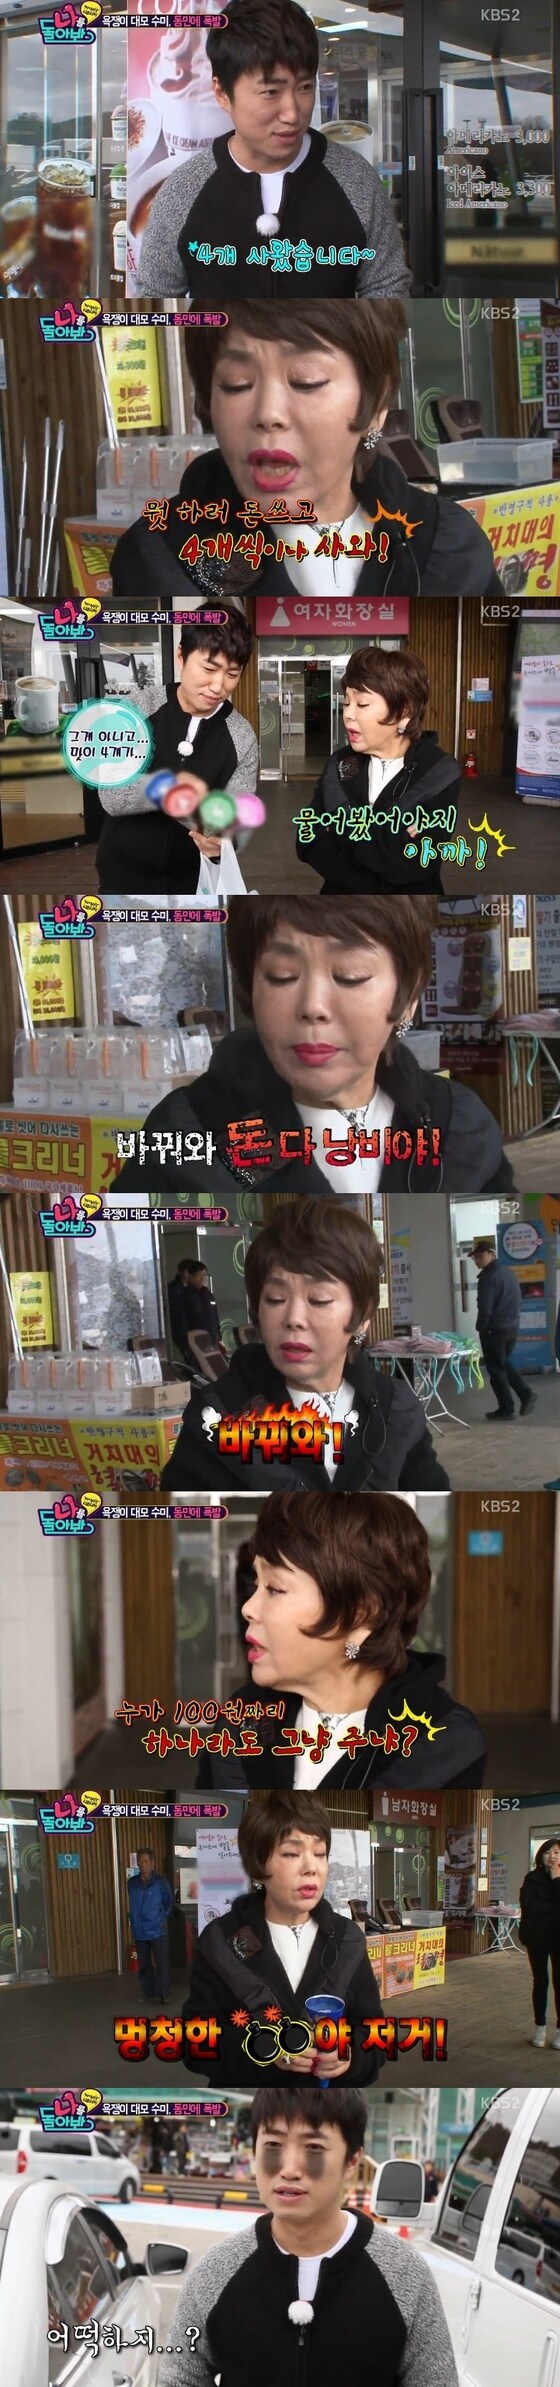 ´나를 돌아봐´ 김수미가 장동민에게 욕설을 퍼부었다. © 뉴스1스포츠 / KBS2 ´나를 돌아봐´ 캡처